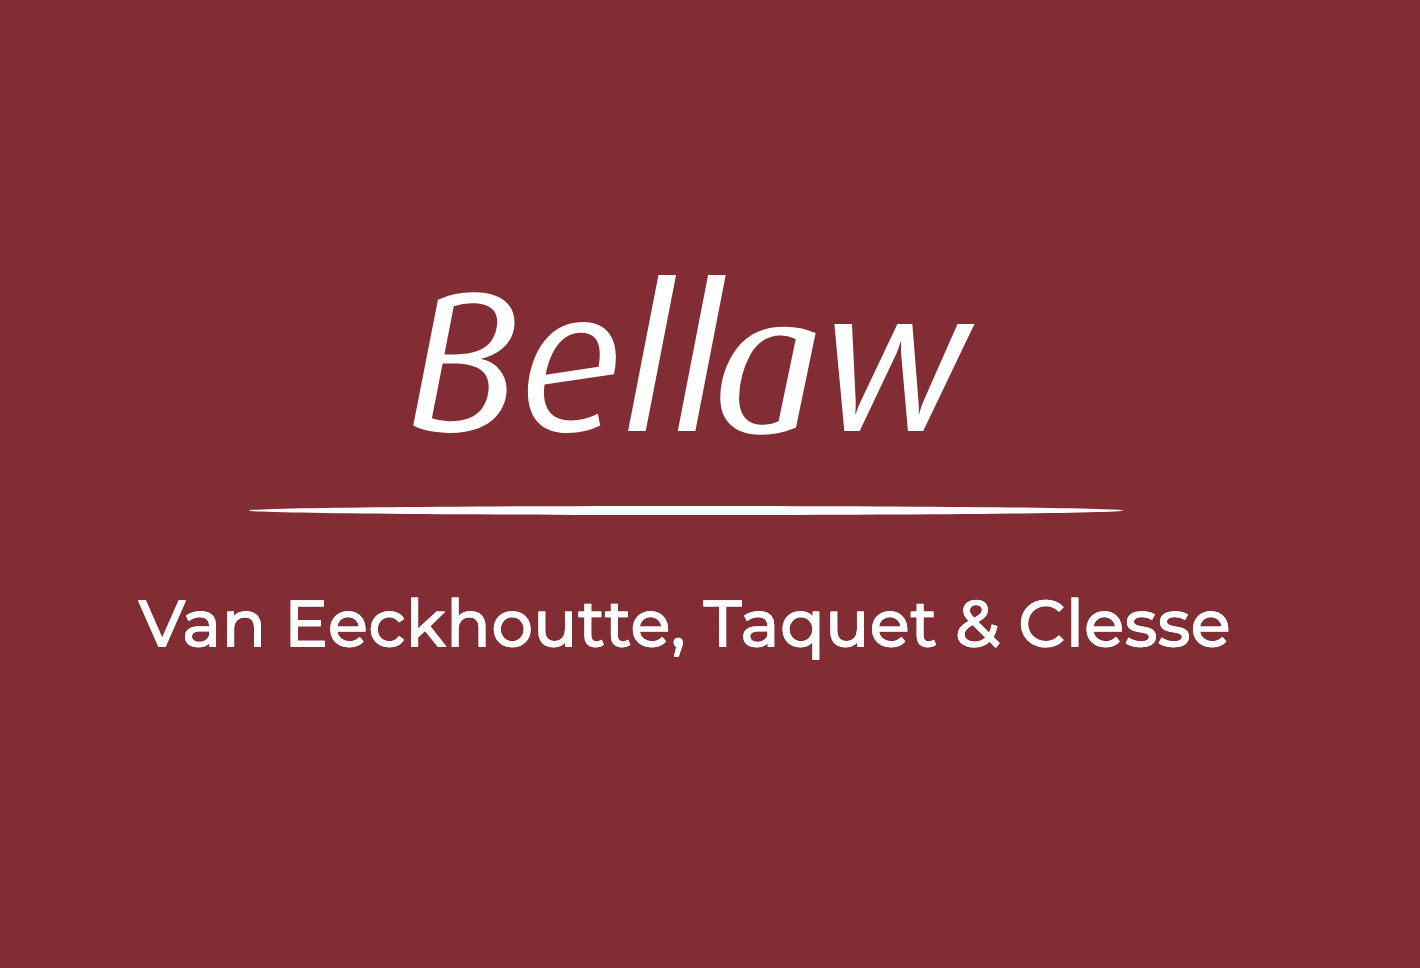 BELLAW - Van Eeckhoutte, Taquet & Clesse logo